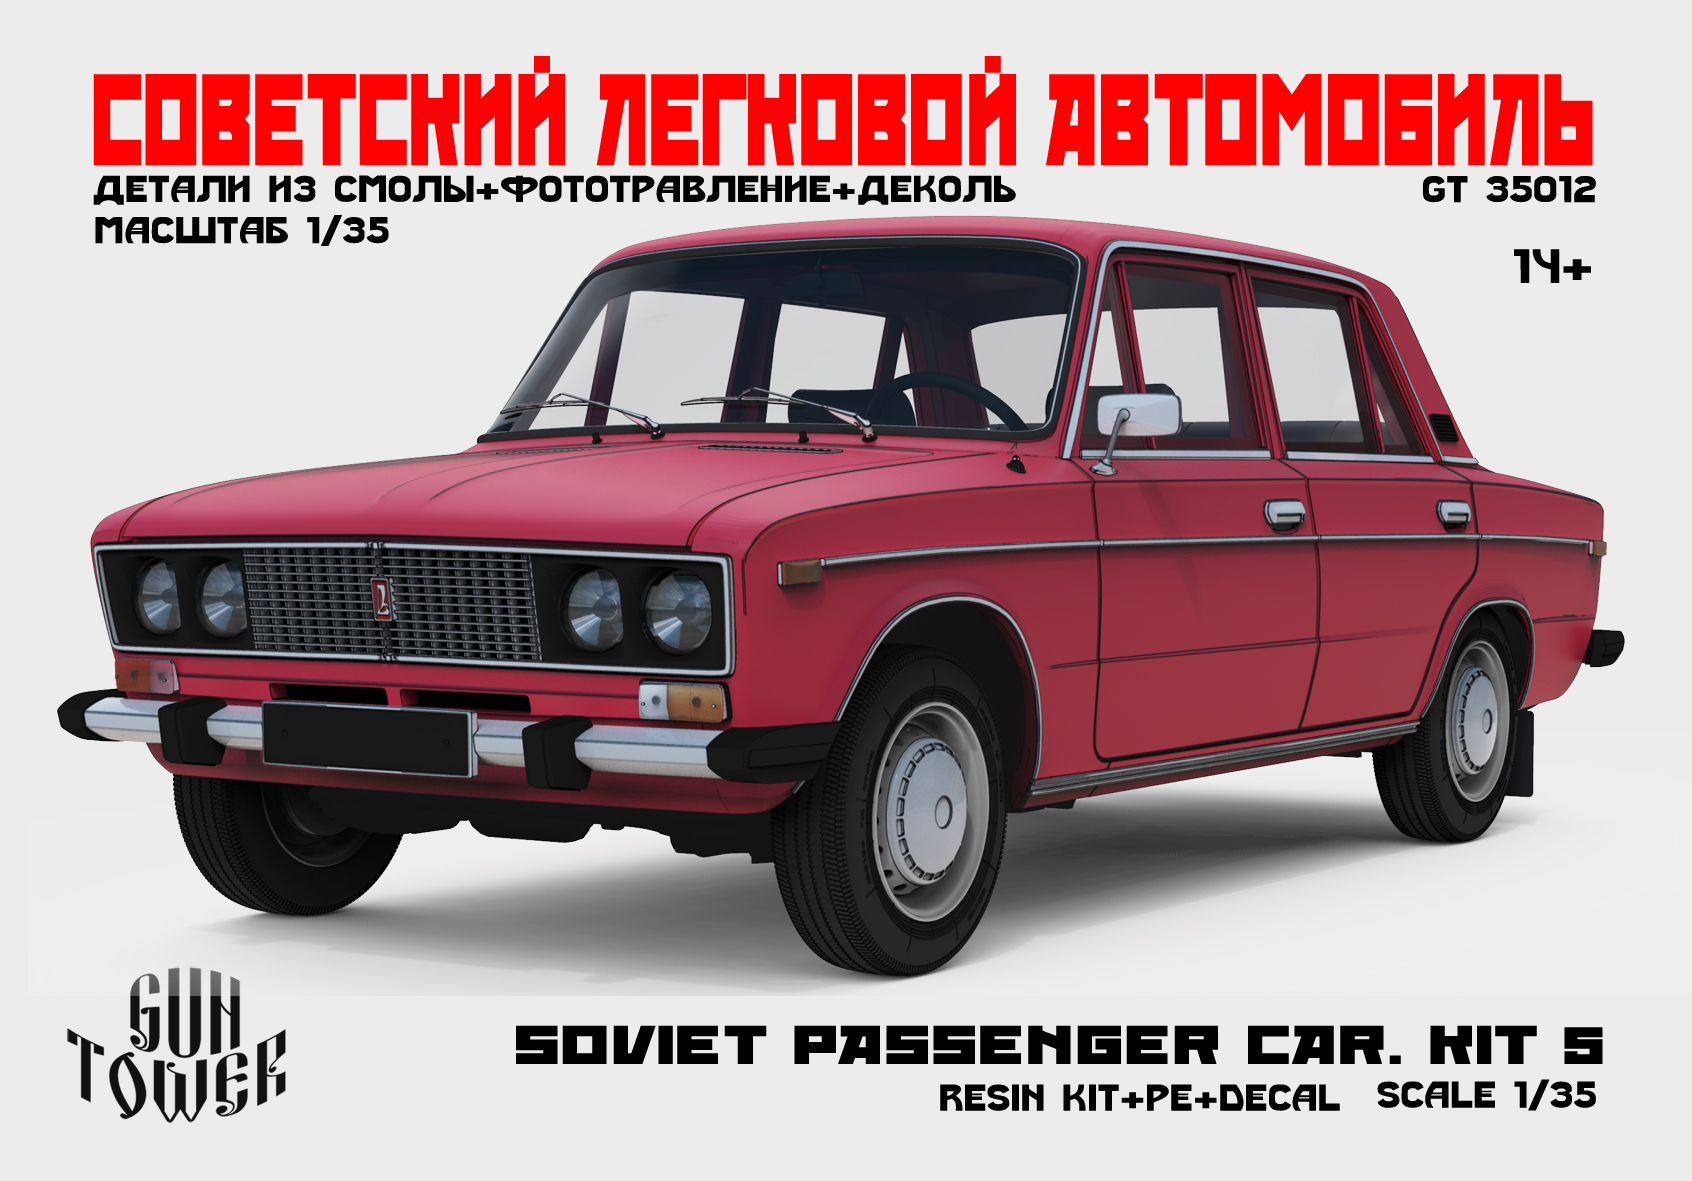 Soviet passenger car.Kit 5 (2106)